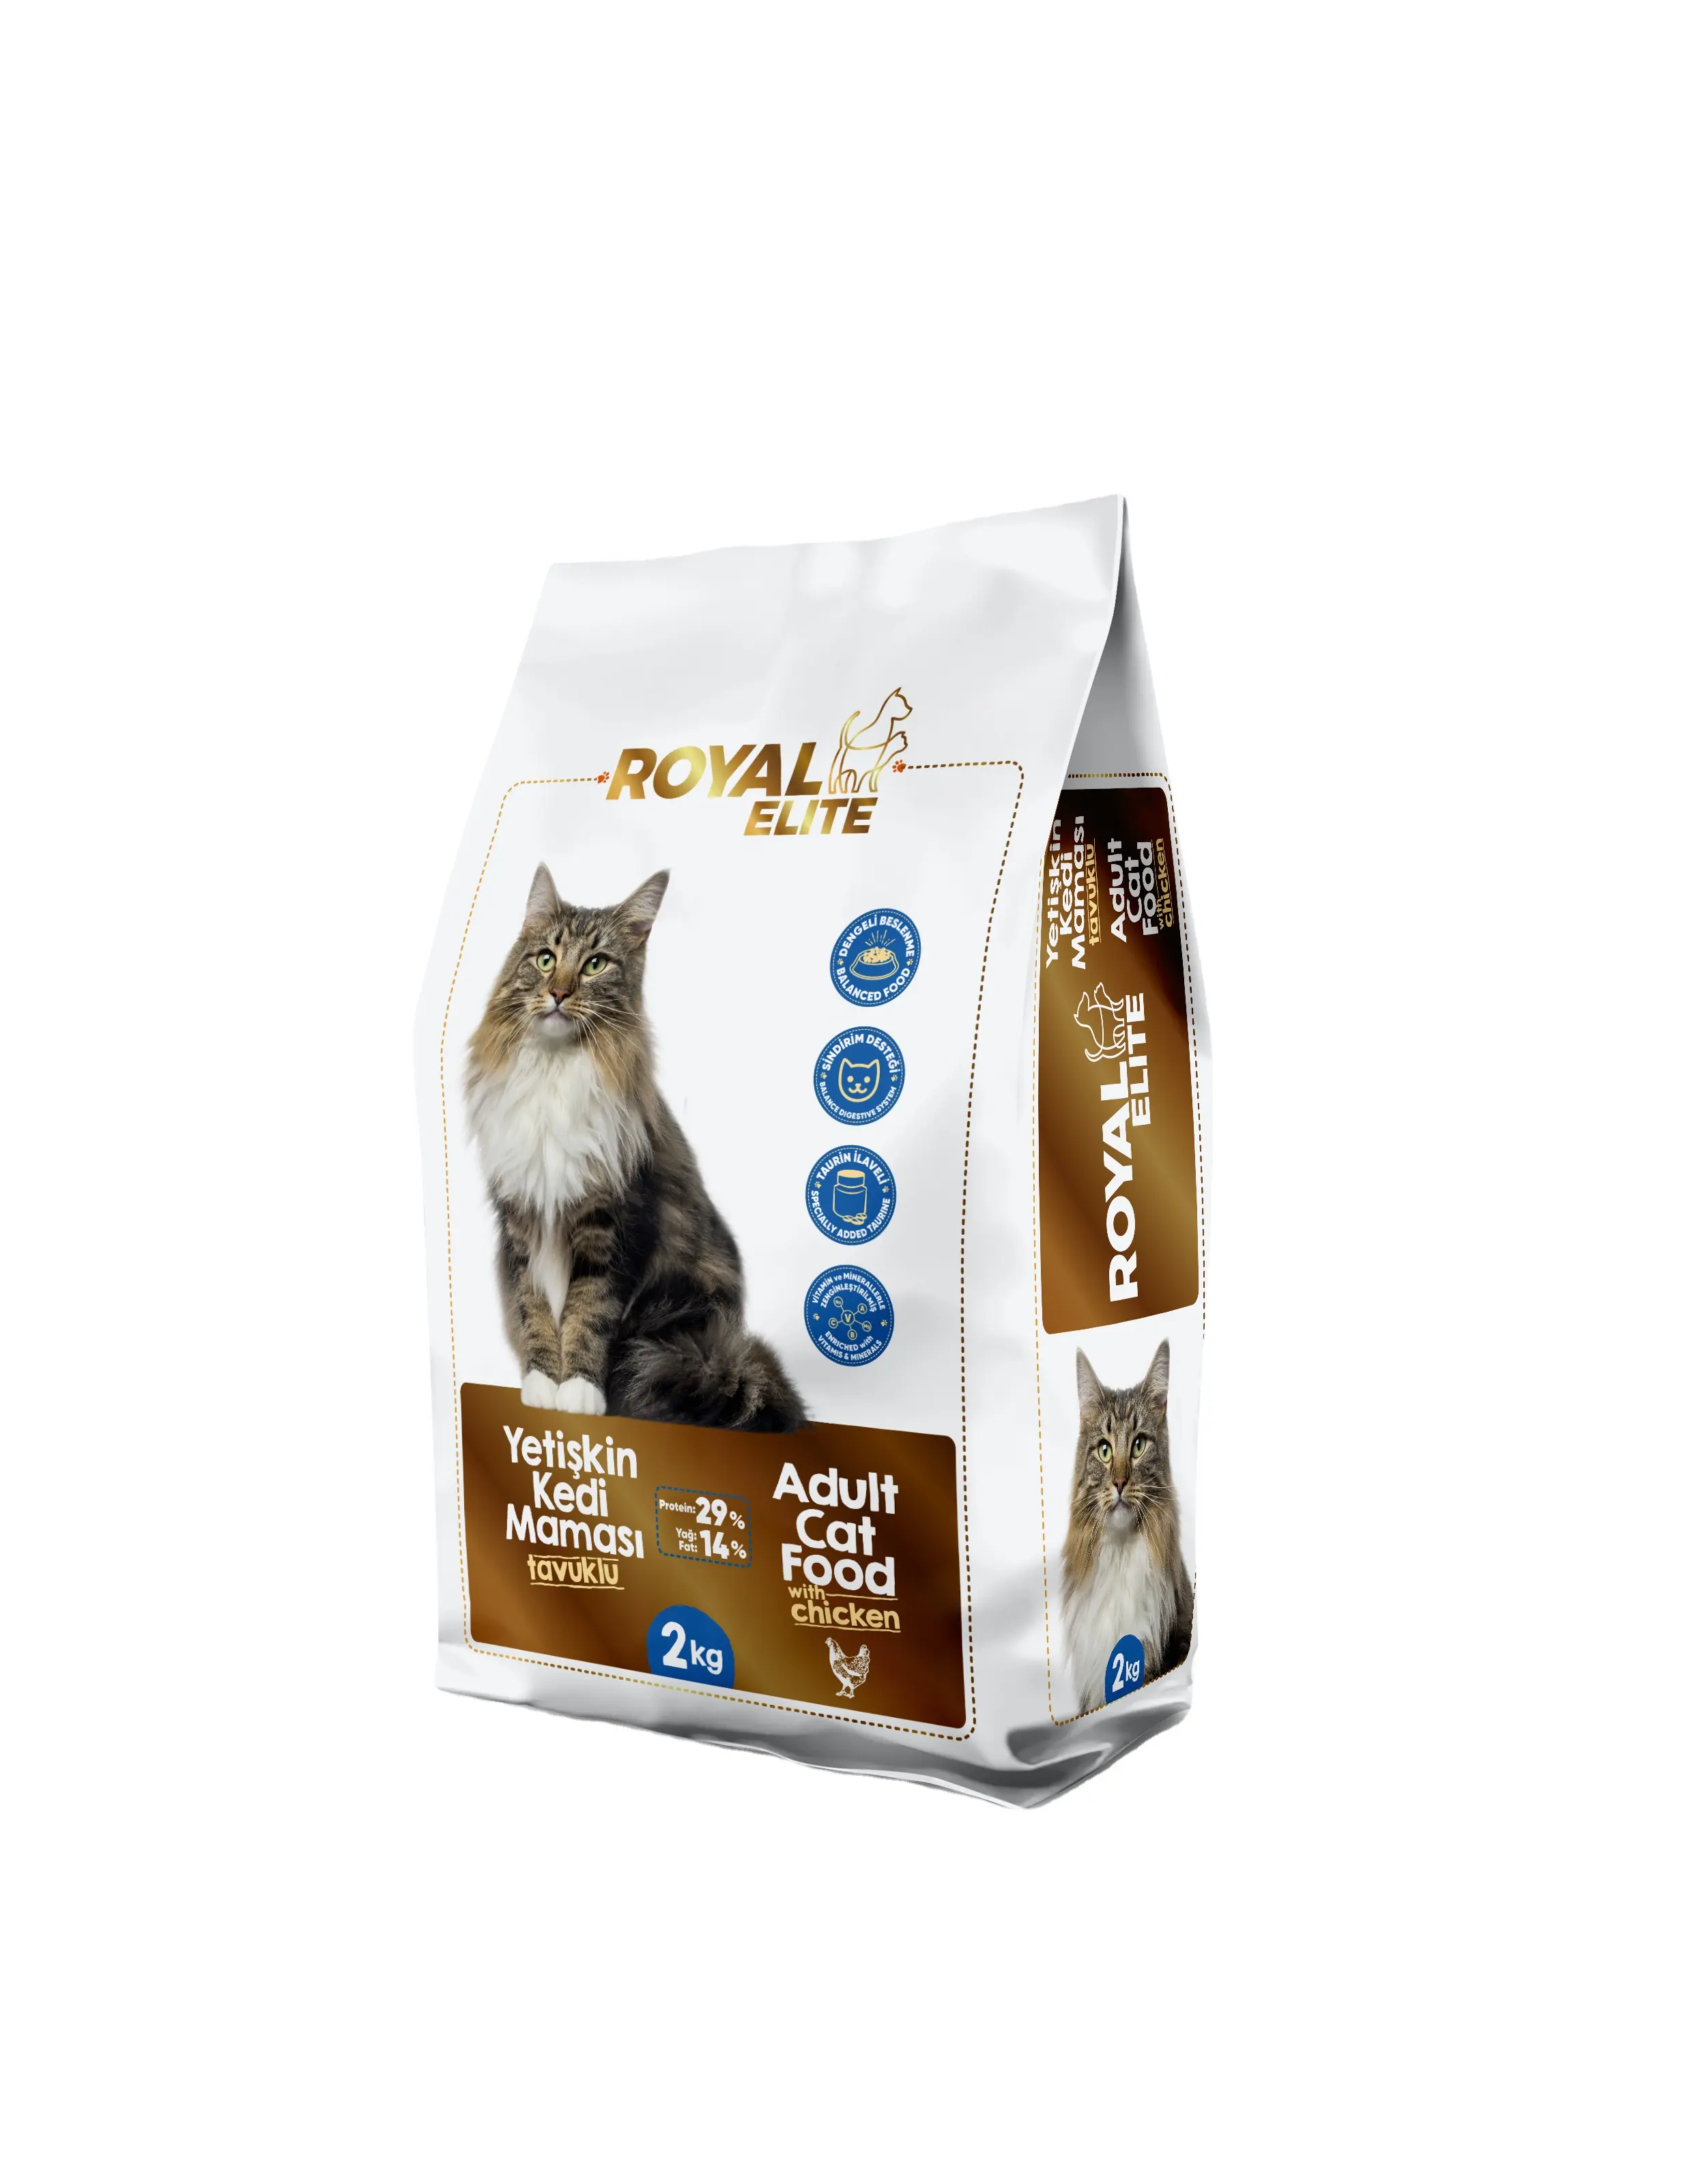 La comida Royal Elite para gatos adultos con pollo de 2Kg apoya el sistema inmunológico de su gato junto con un sistema digestivo saludable